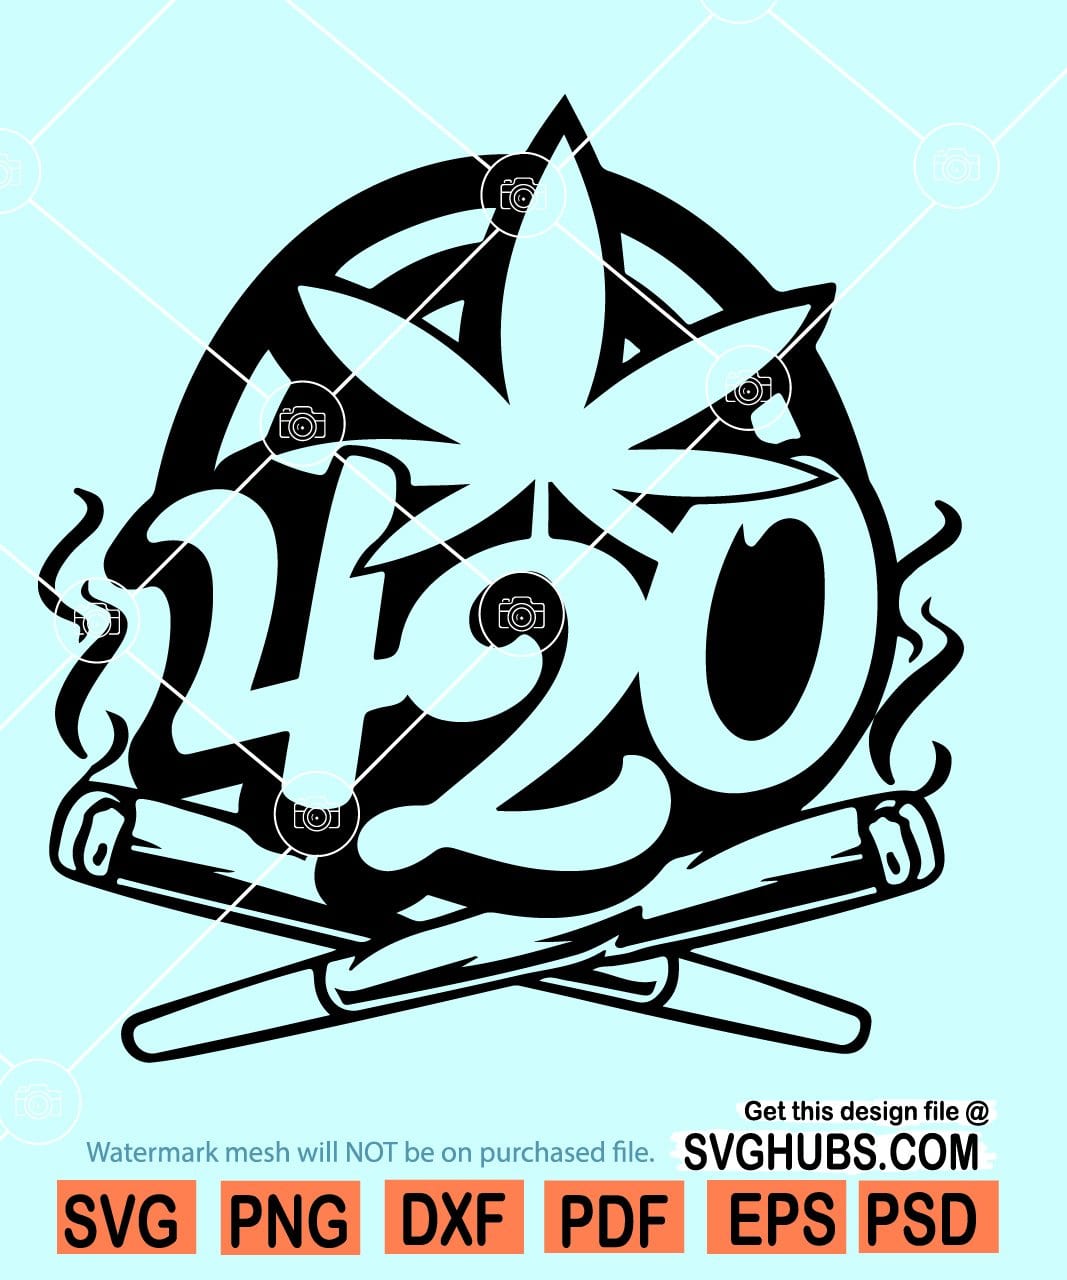 Download 420 Weed Svg 420 Svg Happy 420 Svg Cannabis Svg Svg Hubs